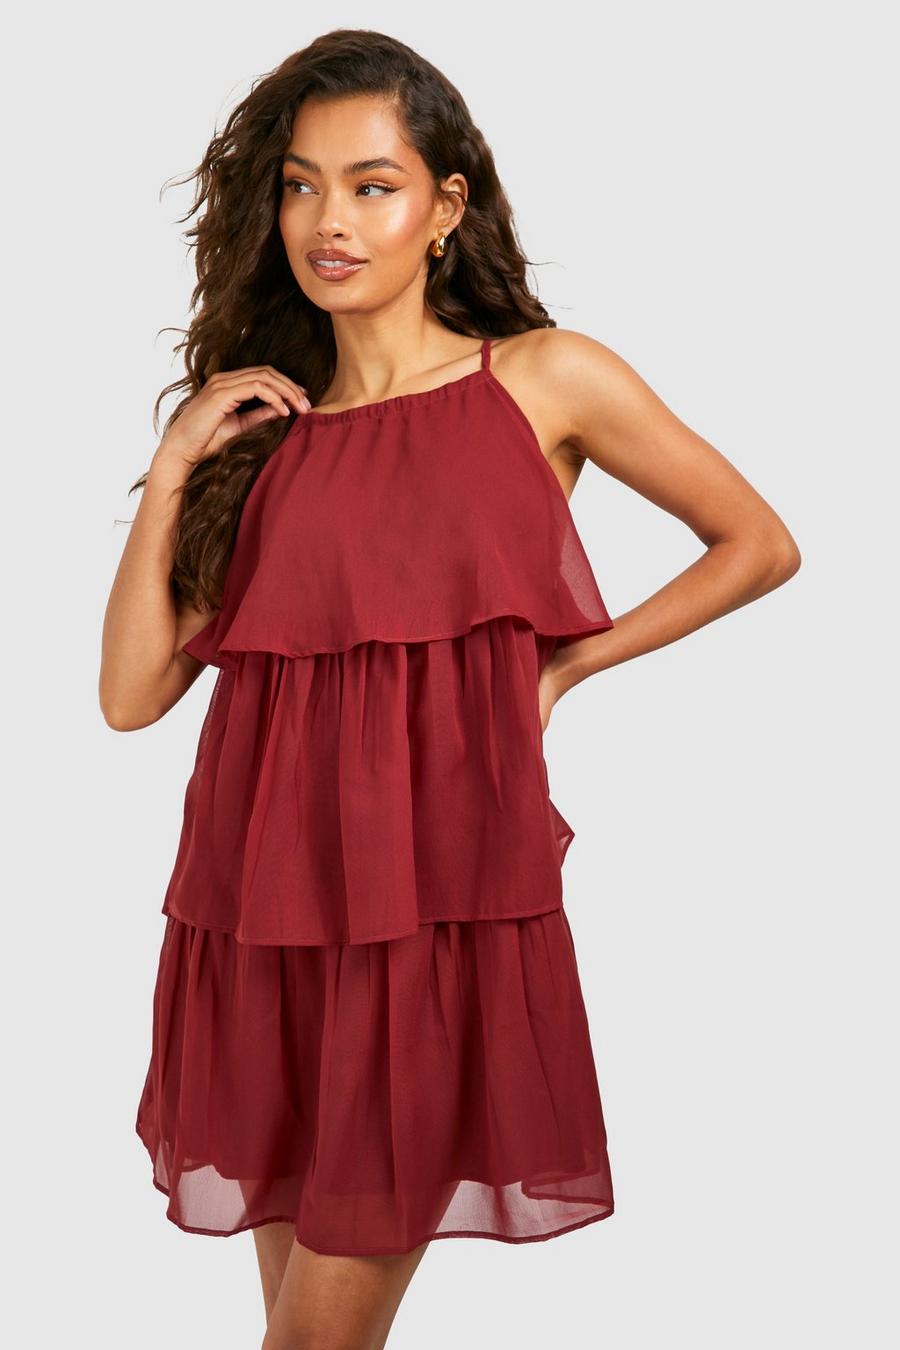 Red Chiffon Halter Tiered Mini Dress